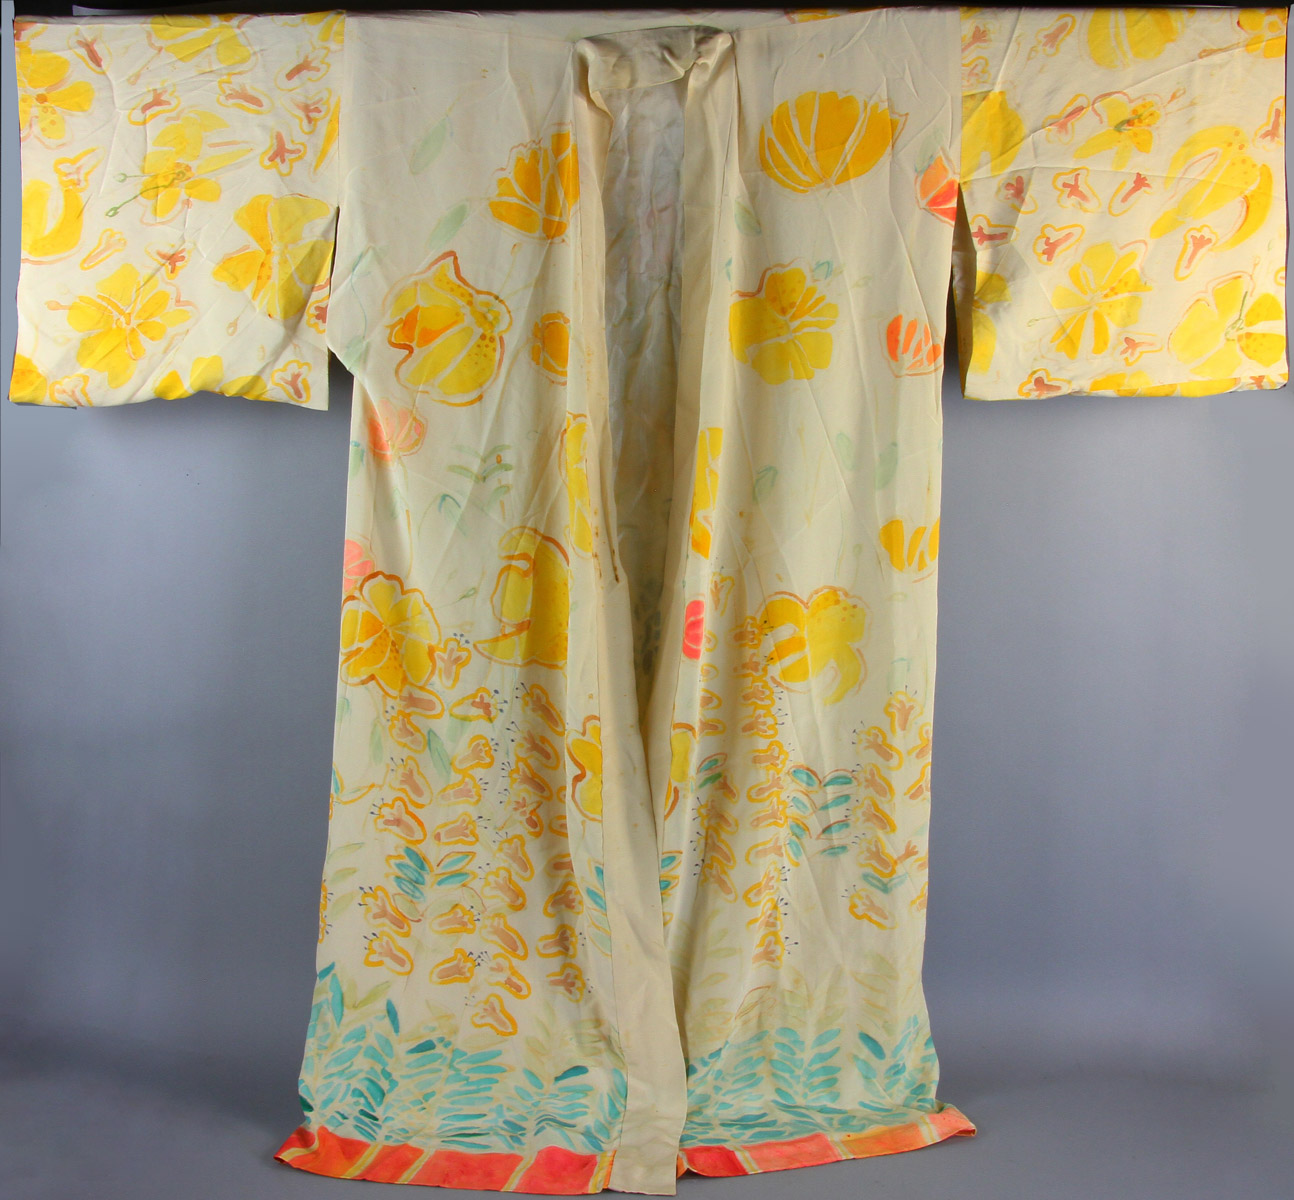 Japanese silk kimono as pajamas, 52" H x 56" W.